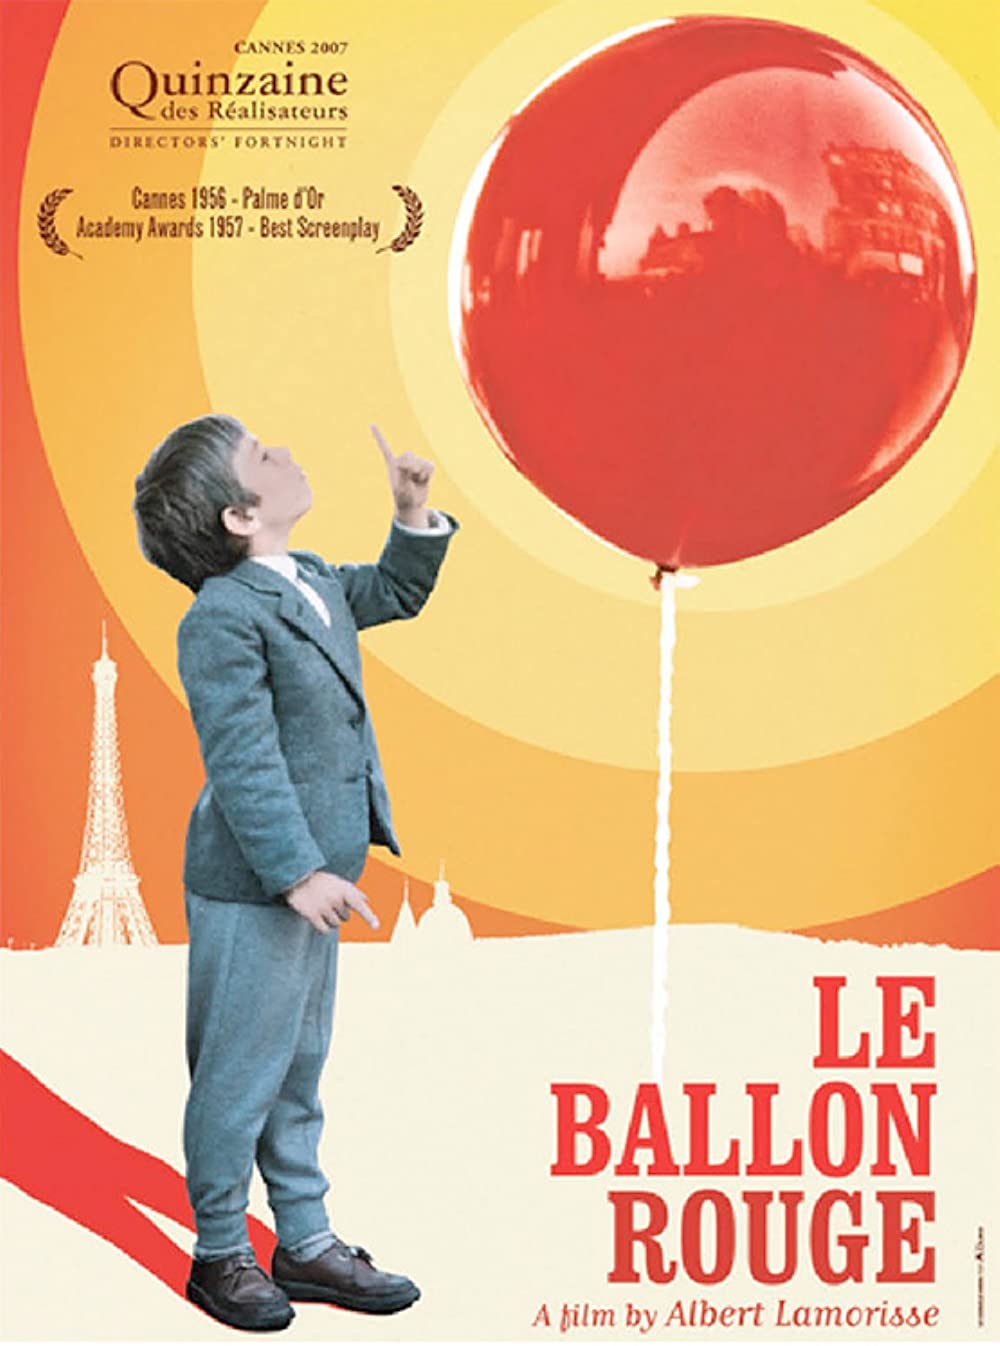 Filmbeschreibung zu Der rote Ballon